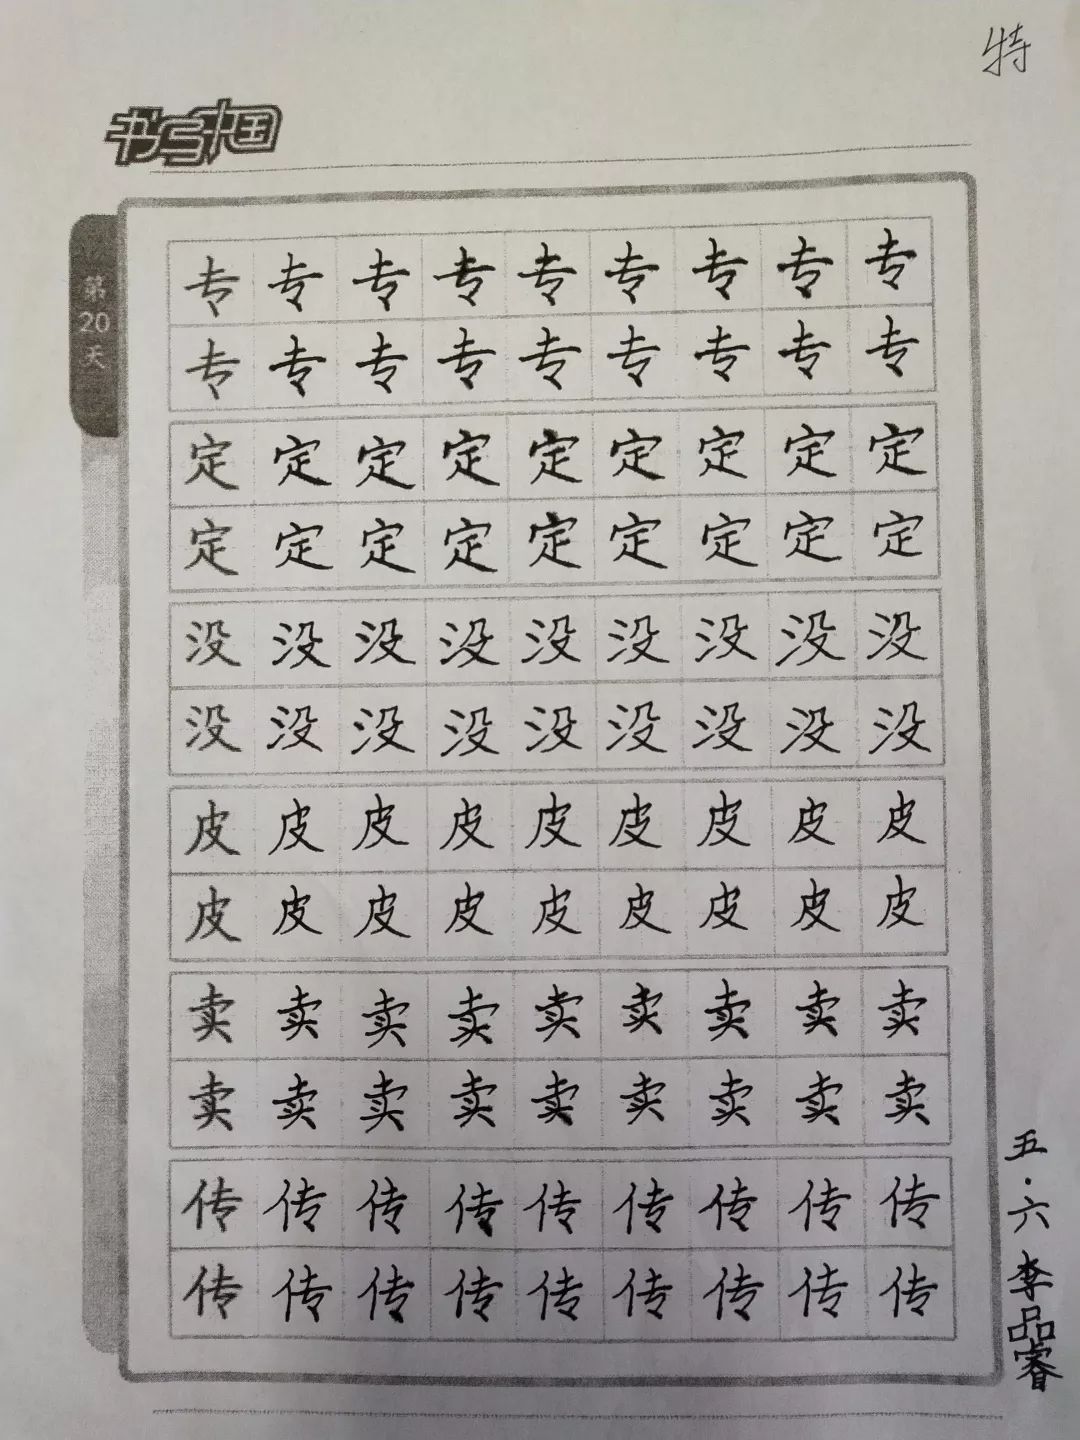 【印象实小】写好方块字 做好中国人